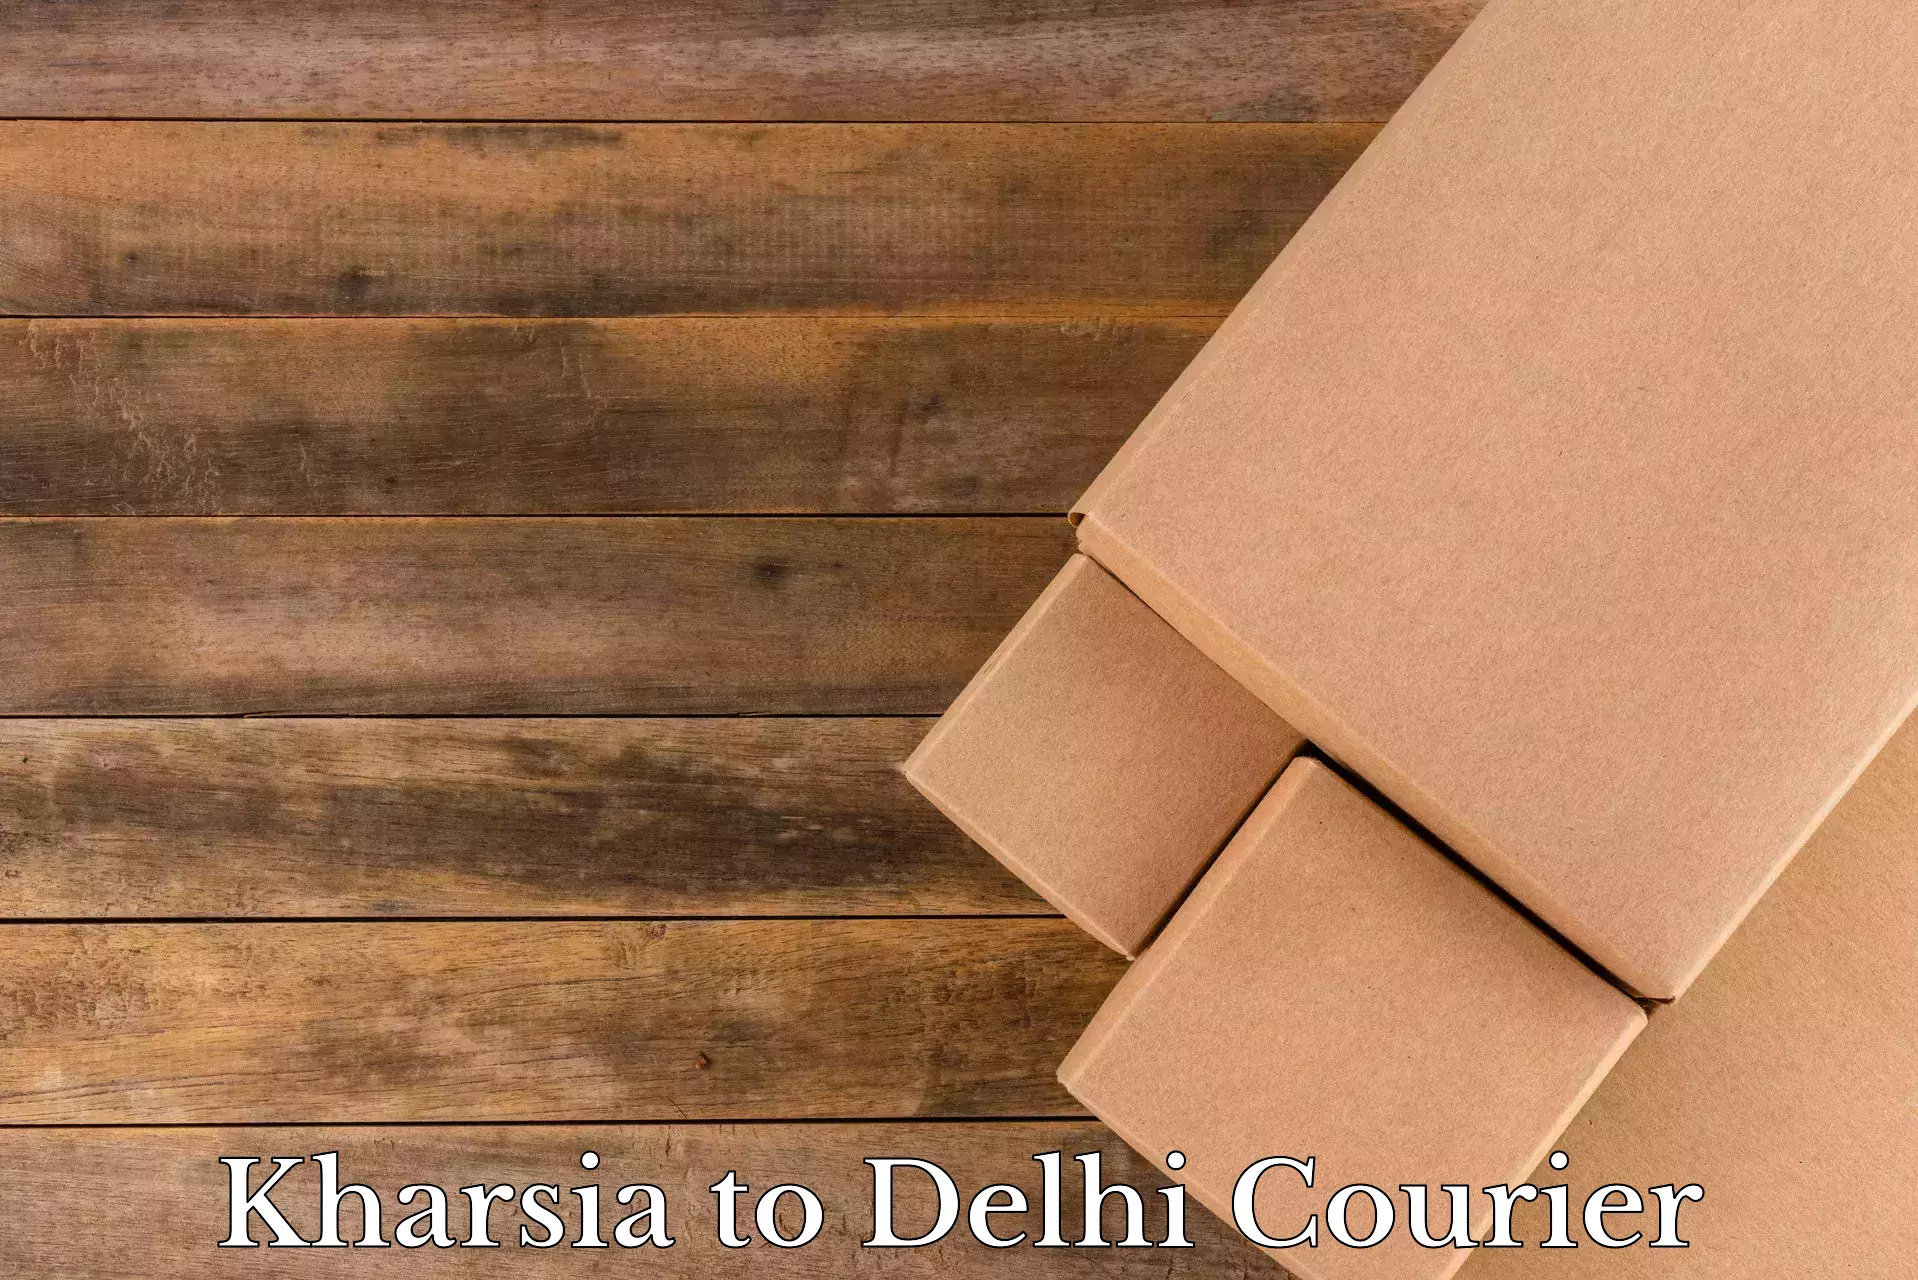 Budget-friendly moving services Kharsia to Delhi